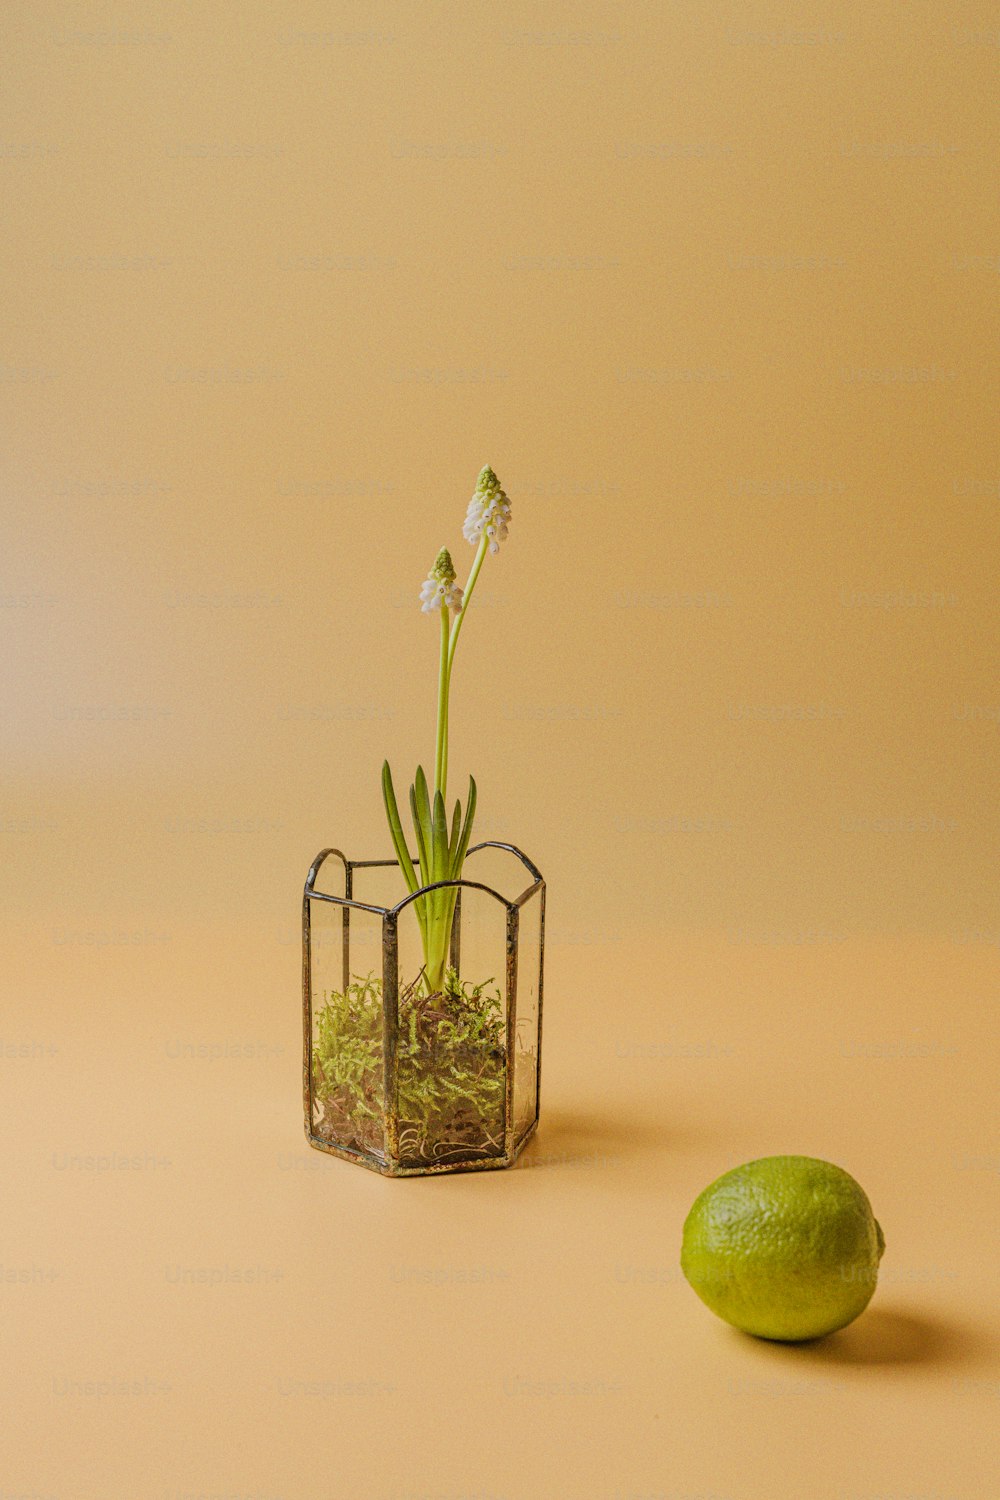 un piccolo vaso di vetro con una pianta accanto a una calce